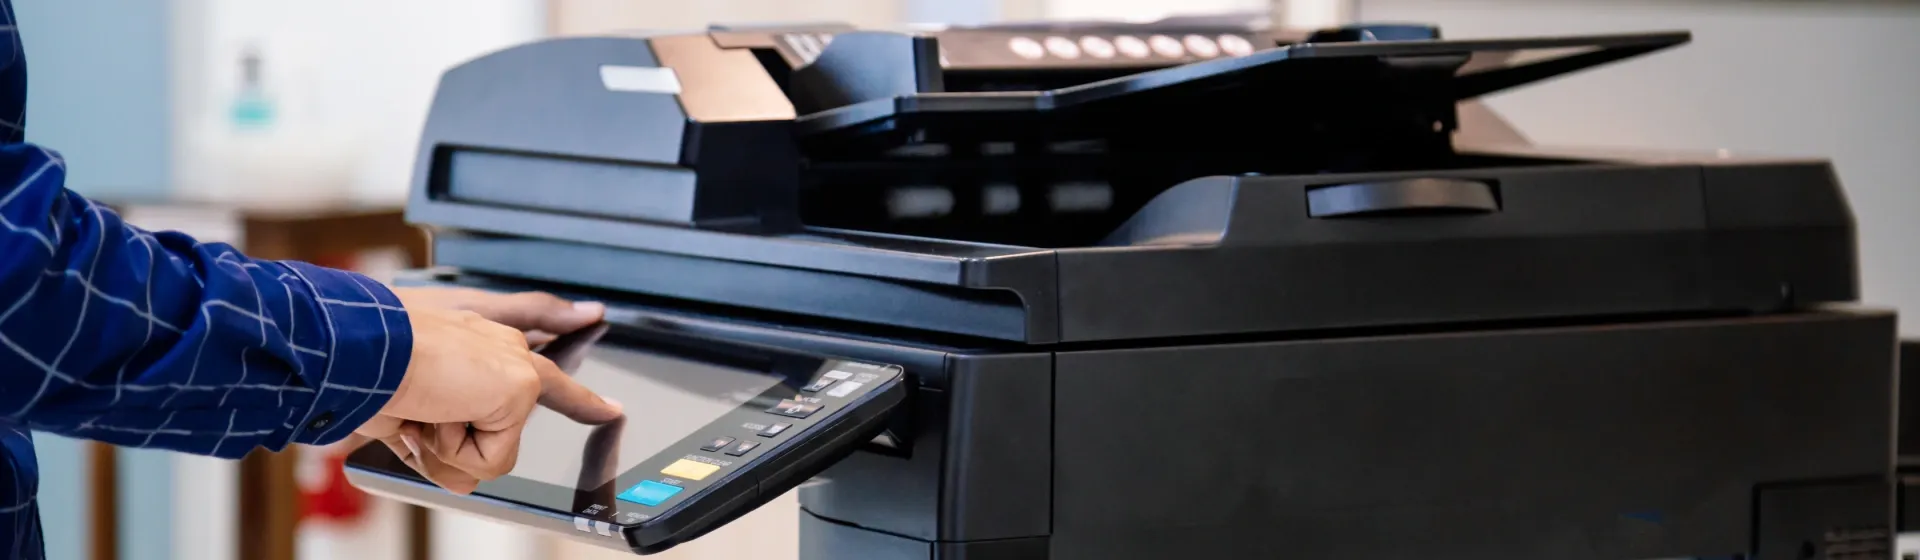 Melhor impressora tanque de tinta 2023: os 11 melhores modelos